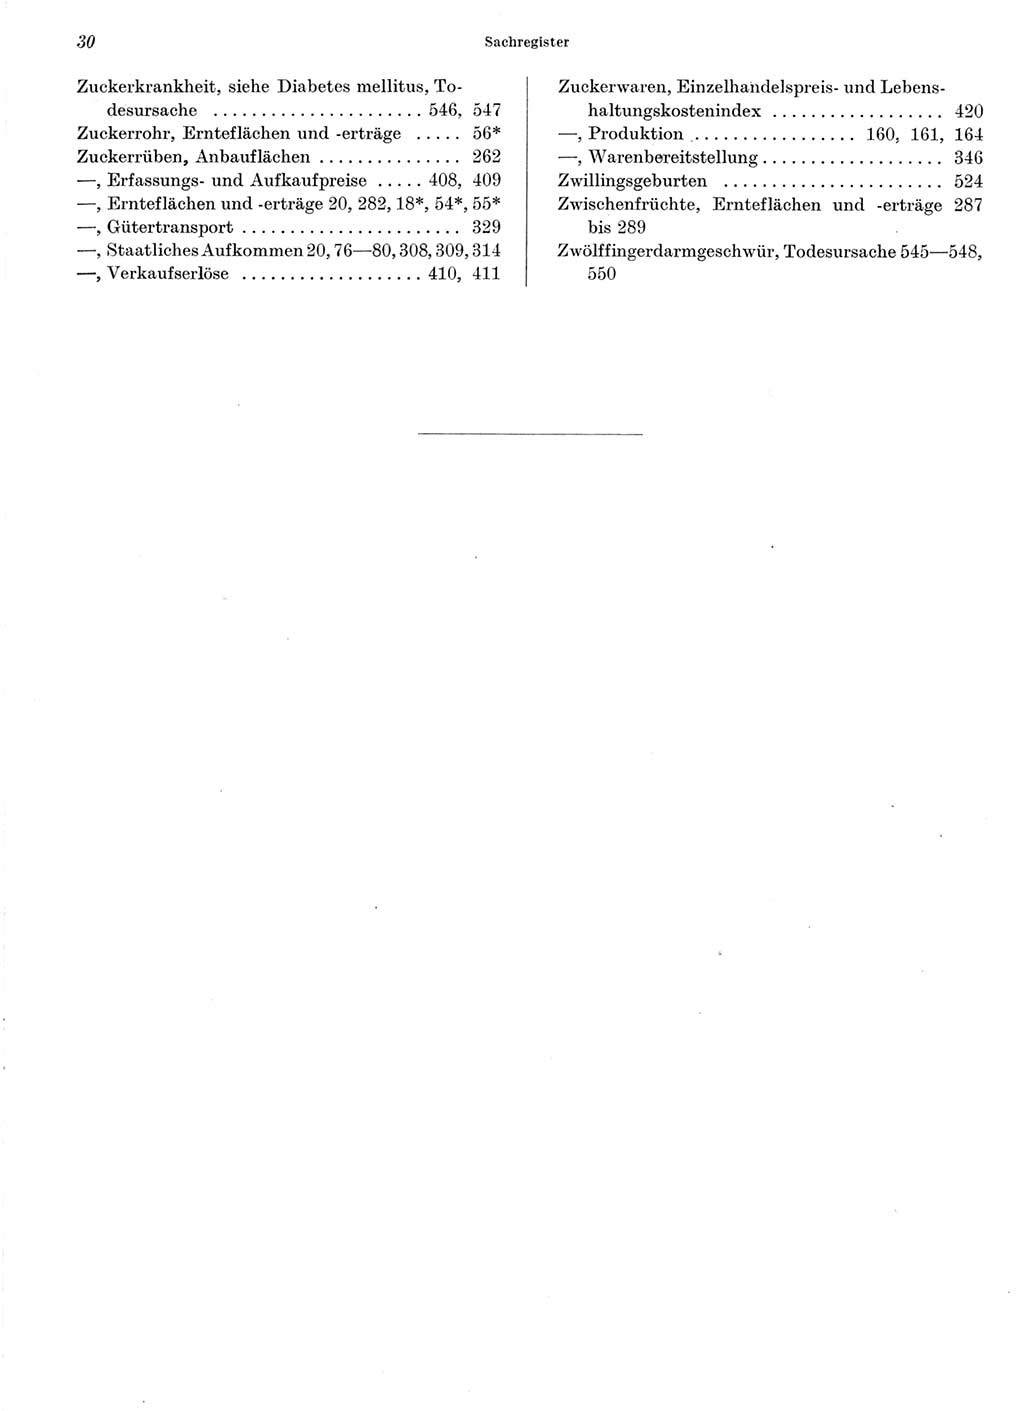 Statistisches Jahrbuch der Deutschen Demokratischen Republik (DDR) 1964, Seite 30 (Stat. Jb. DDR 1964, S. 30)